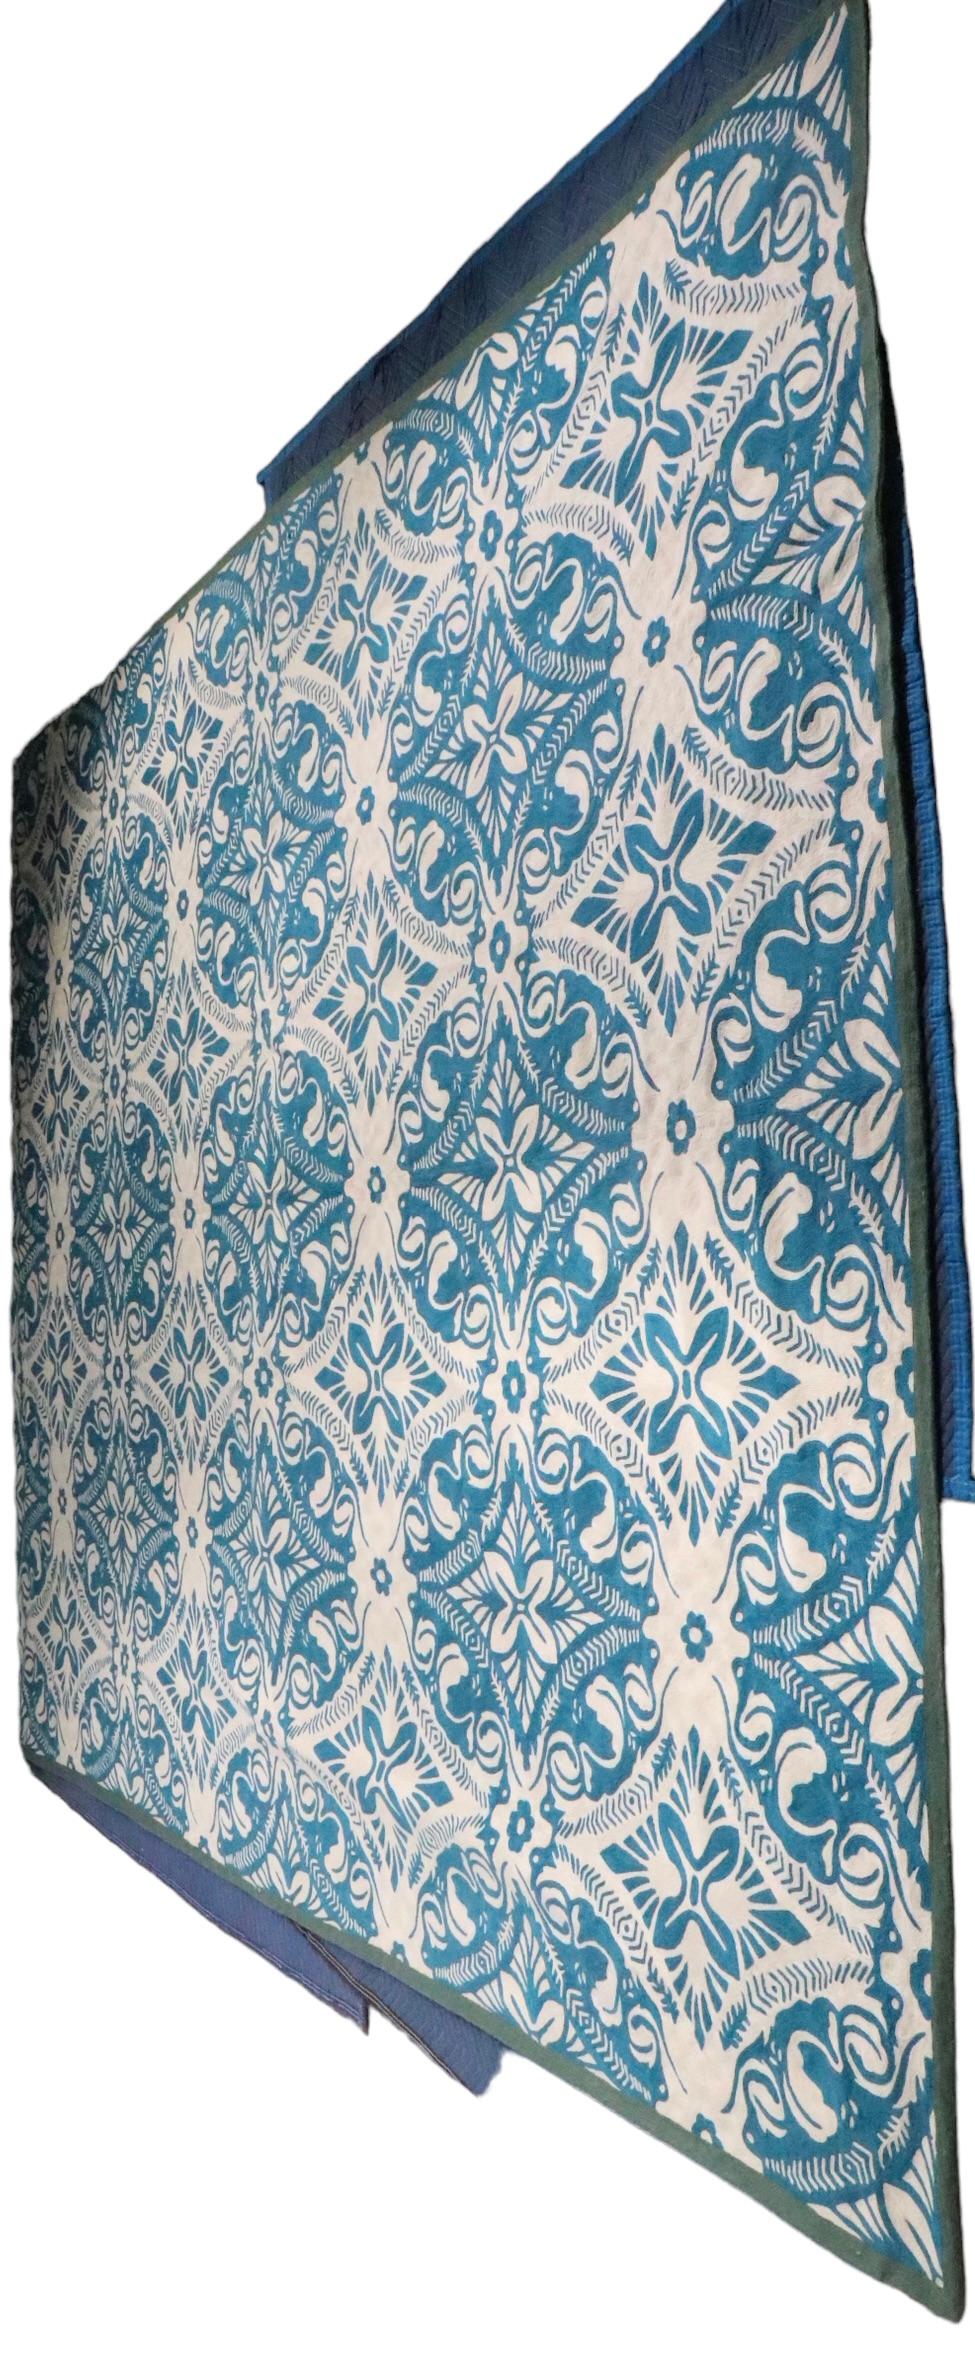 Spectaculaire grand tapis à tissage plat de Suzanne Sharp pour The Rug Company vers 2000 - 2020.  Le tapis se caractérise par un fond blanc cassé avec une  complexe sur toute la ligne  sarcelle, nous pensons que ce motif s'appelle  Cyprès.  Cet